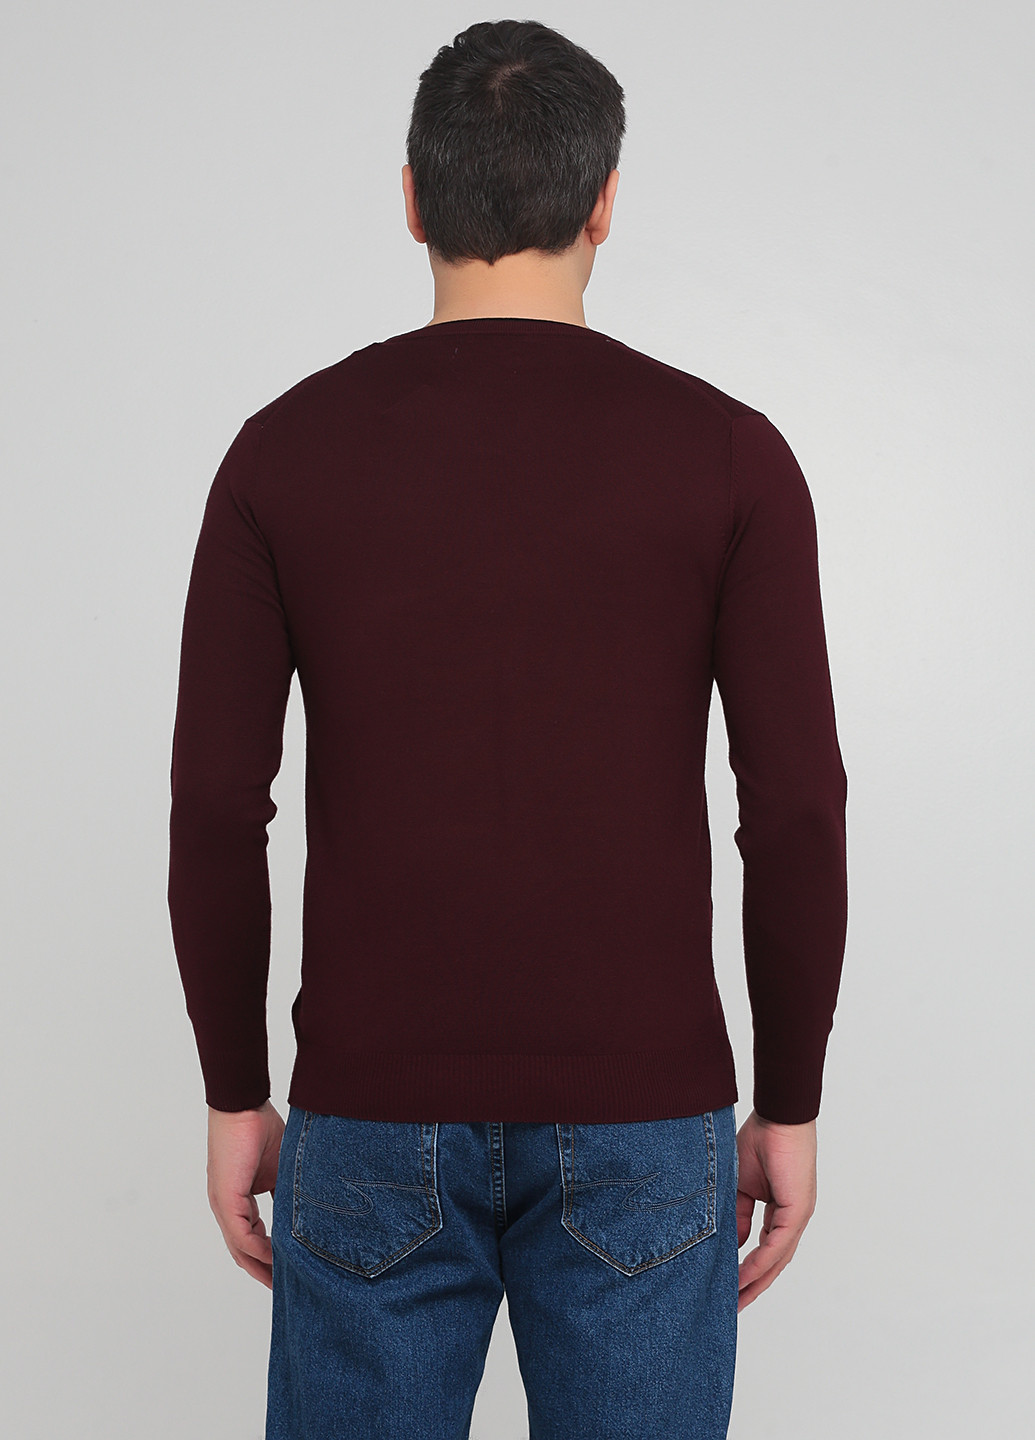 Бордовый демисезонный пуловер пуловер Benson & Cherry